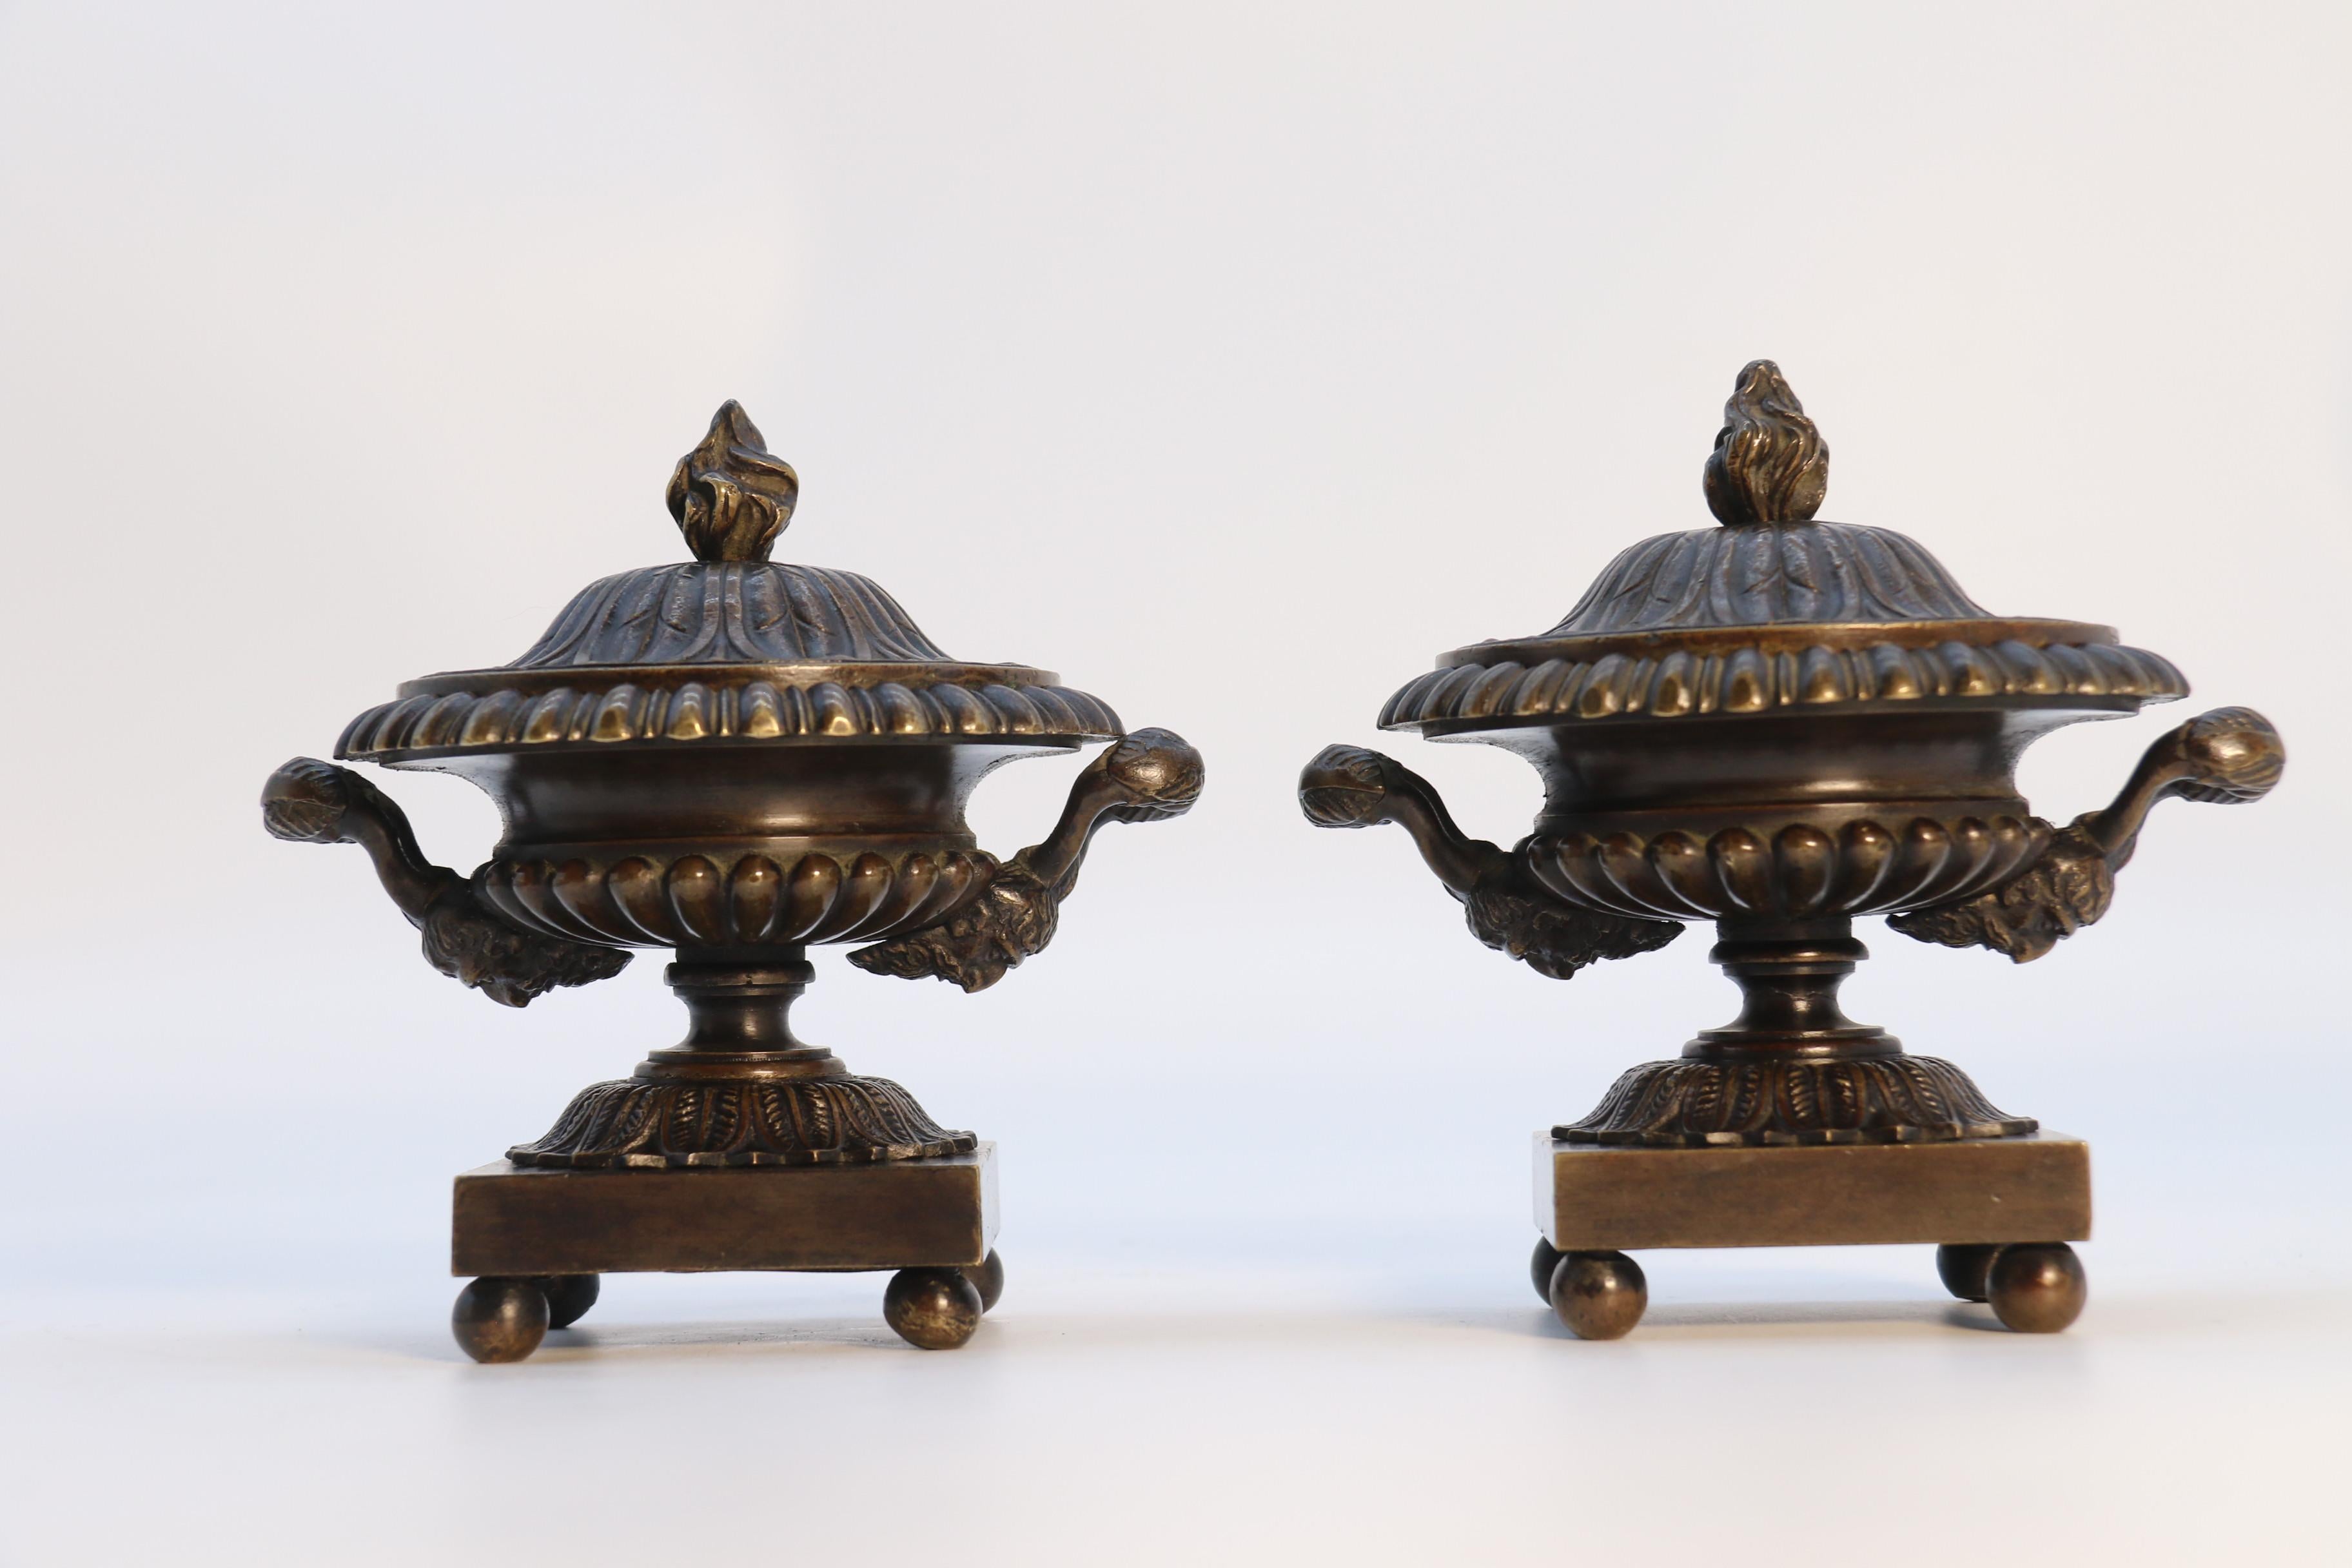 Dieses sehr elegante Paar klassischer englischer Bronzeurnen aus der Regency-Periode hat kleine Proportionen und ist in einem sehr stilvollen und raffinierten Design gefertigt. Sie stehen auf schlichten quadratischen Sockeln, die auf vier kleinen